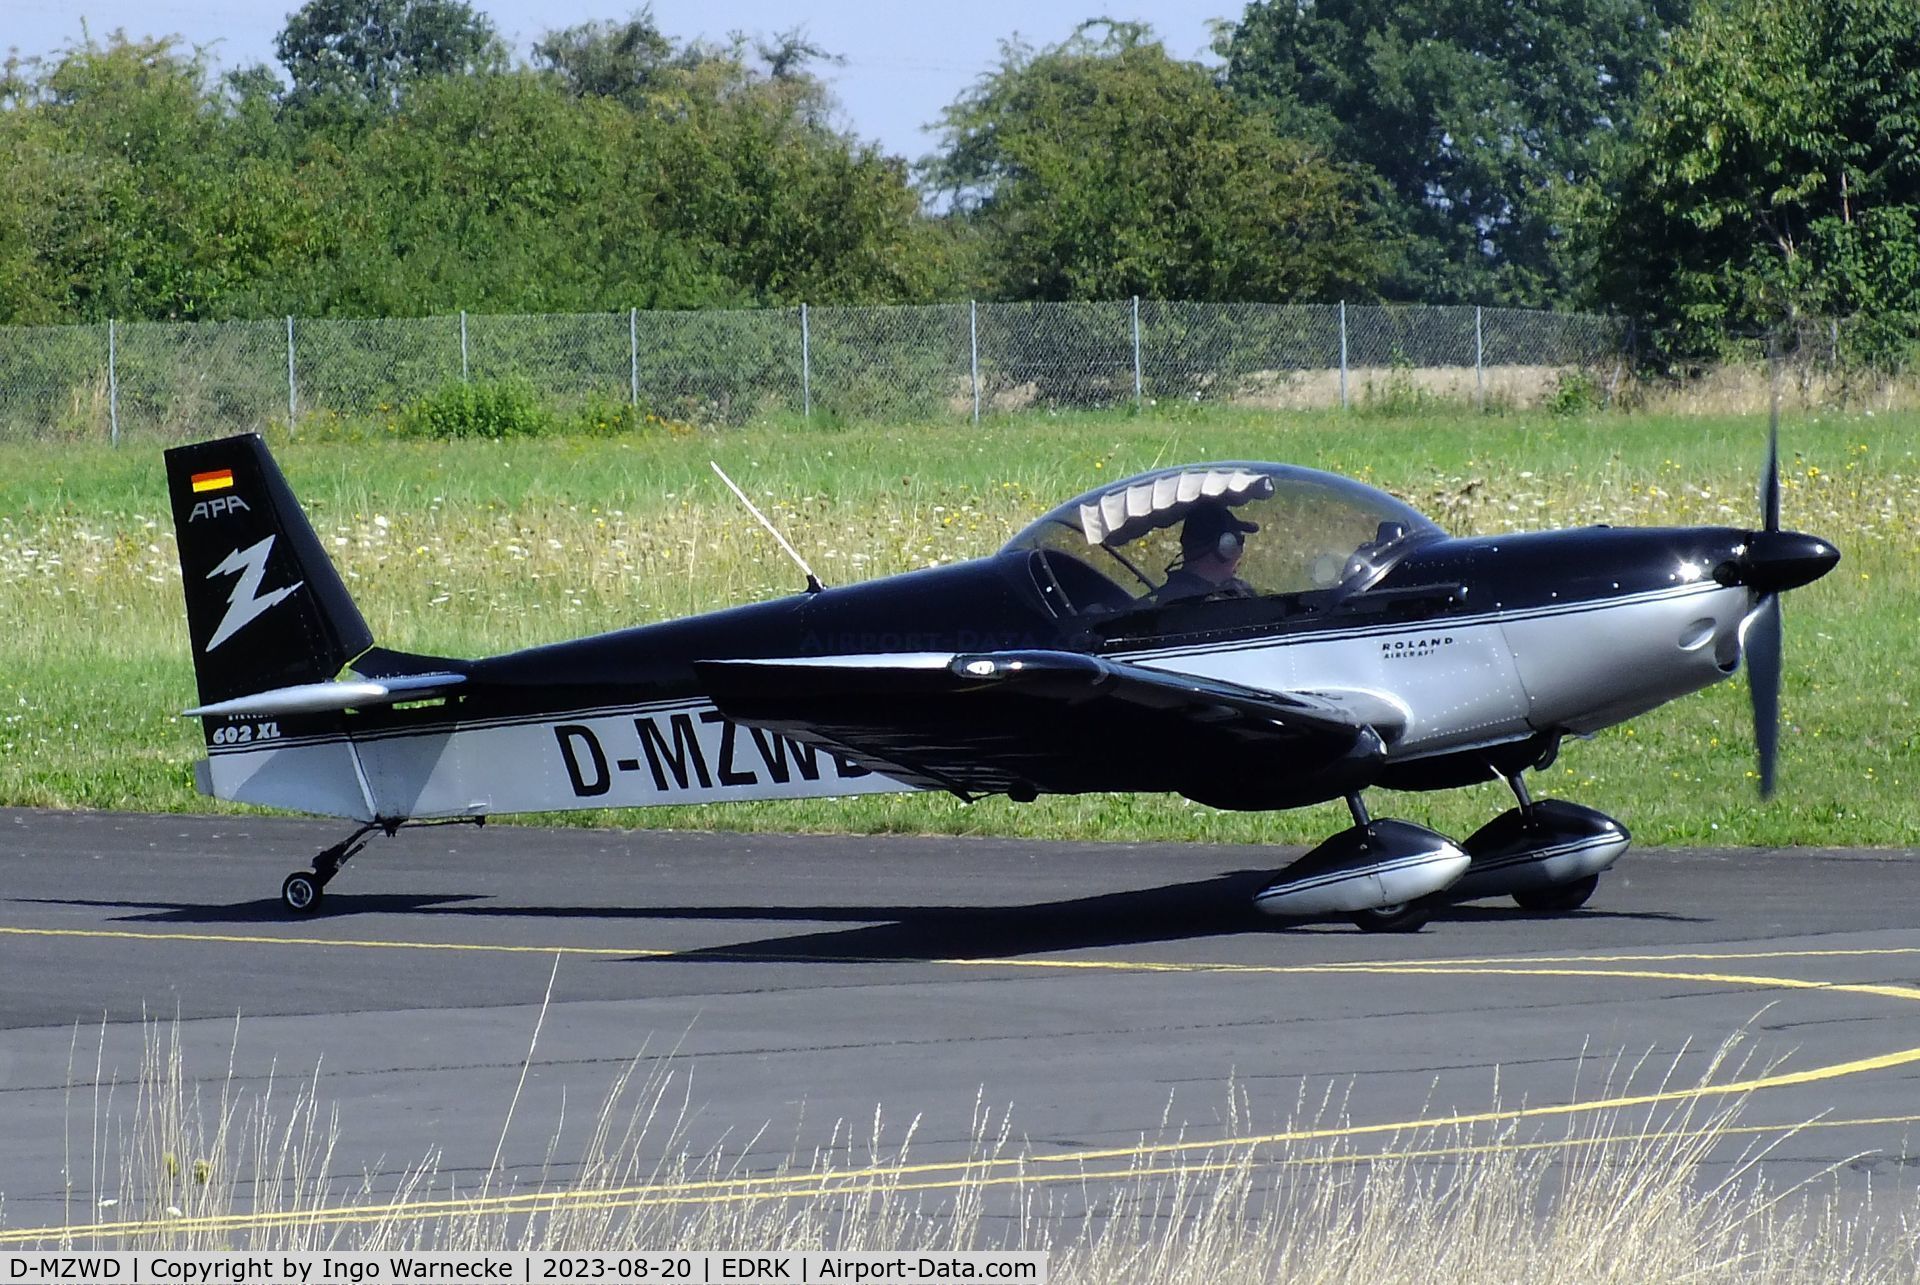 D-MZWD, 2006 Roland Z-602 XL C/N DX-9514, Roland Aircraft Z 602 XL at Koblenz-Winningen airfield